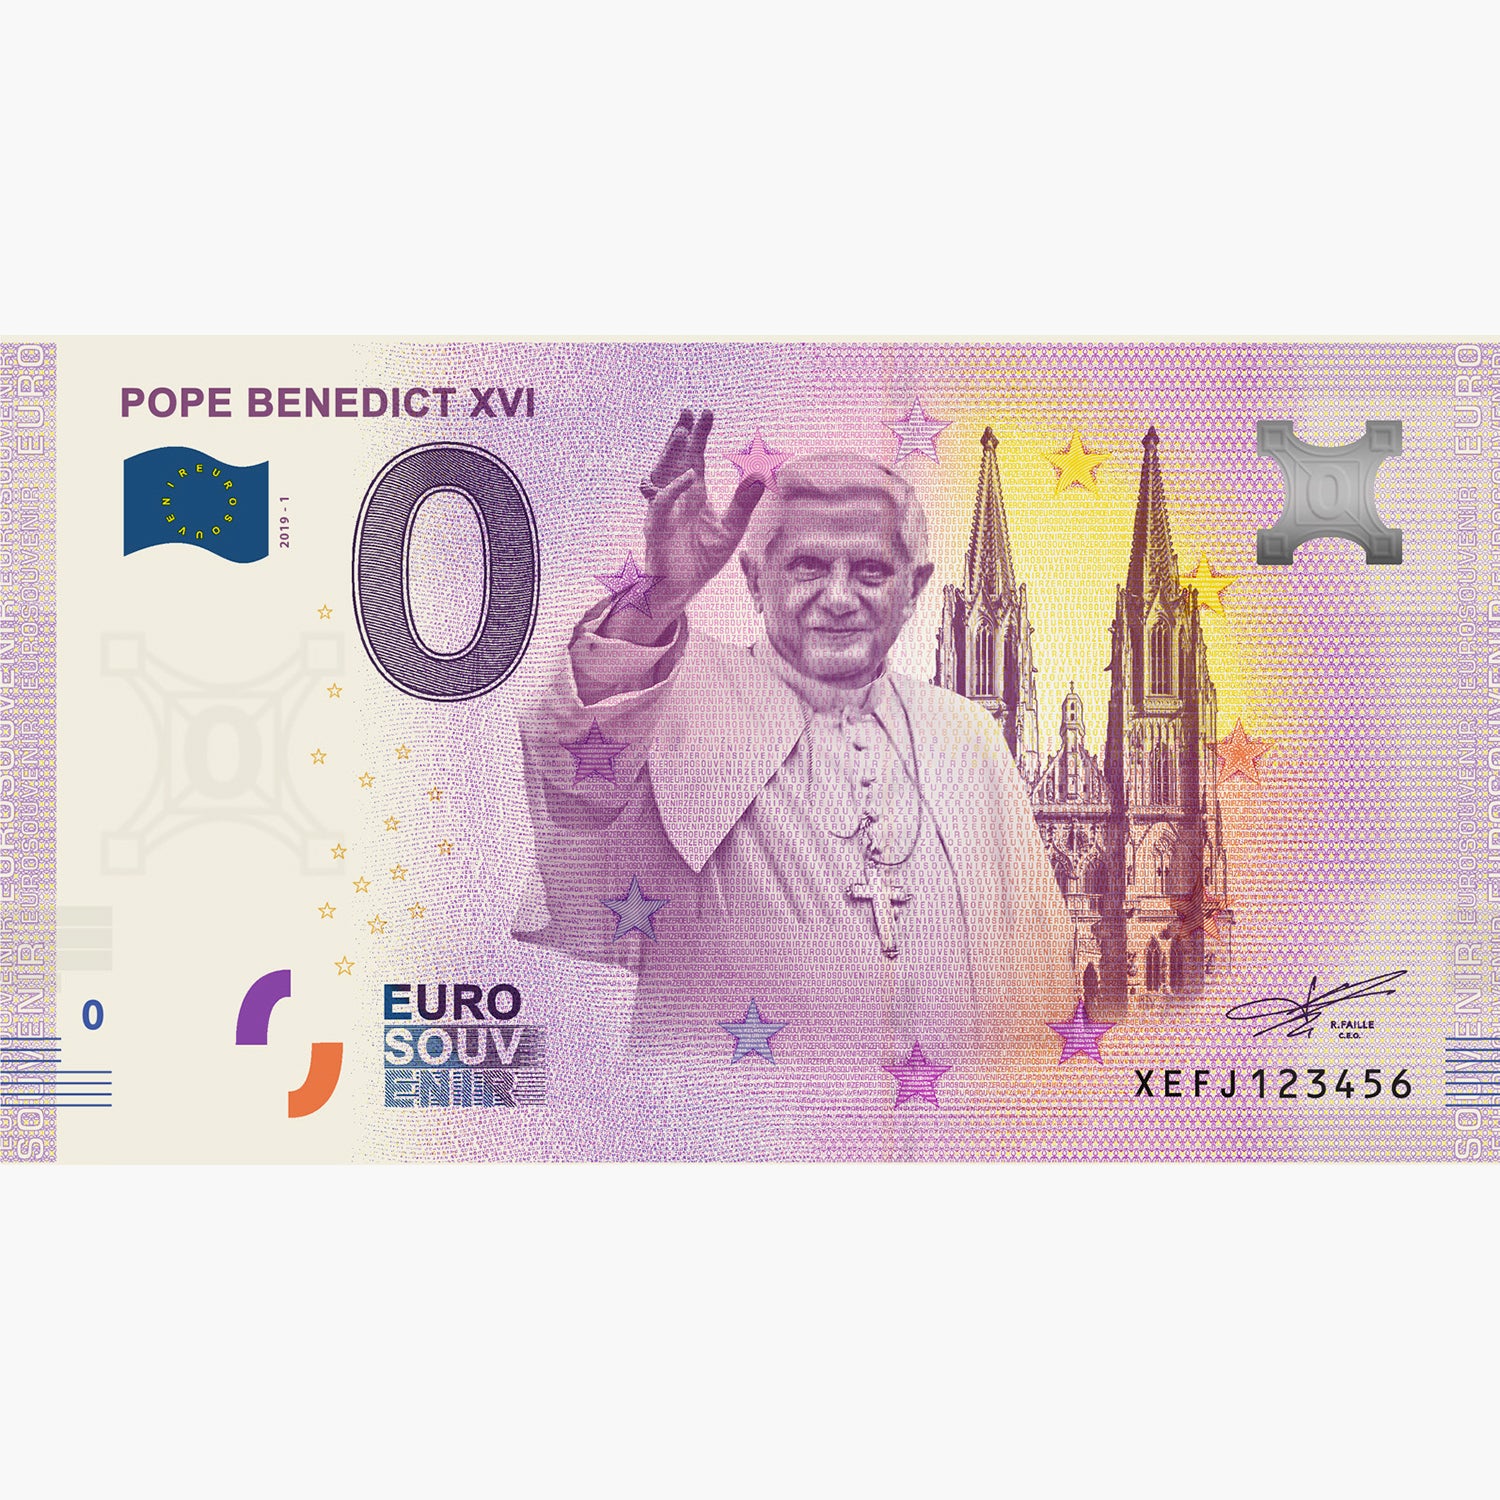 0 Euro Souvenir Note - Pope Benedict XVI